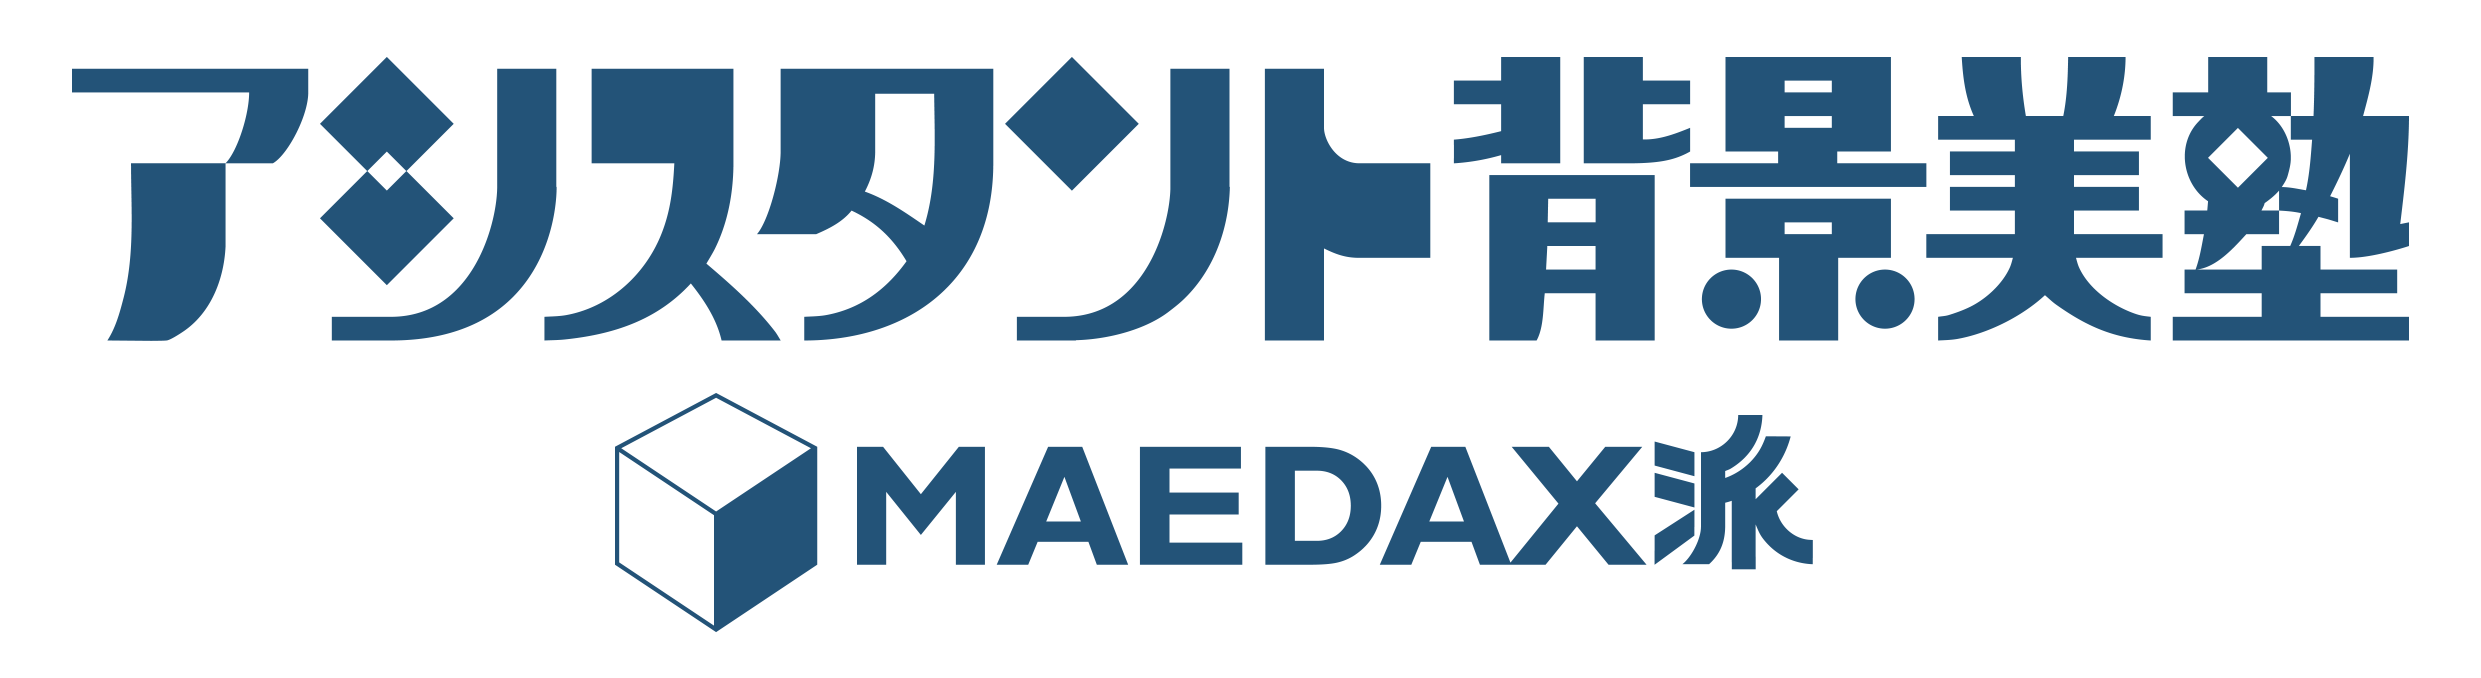 maedax_logo